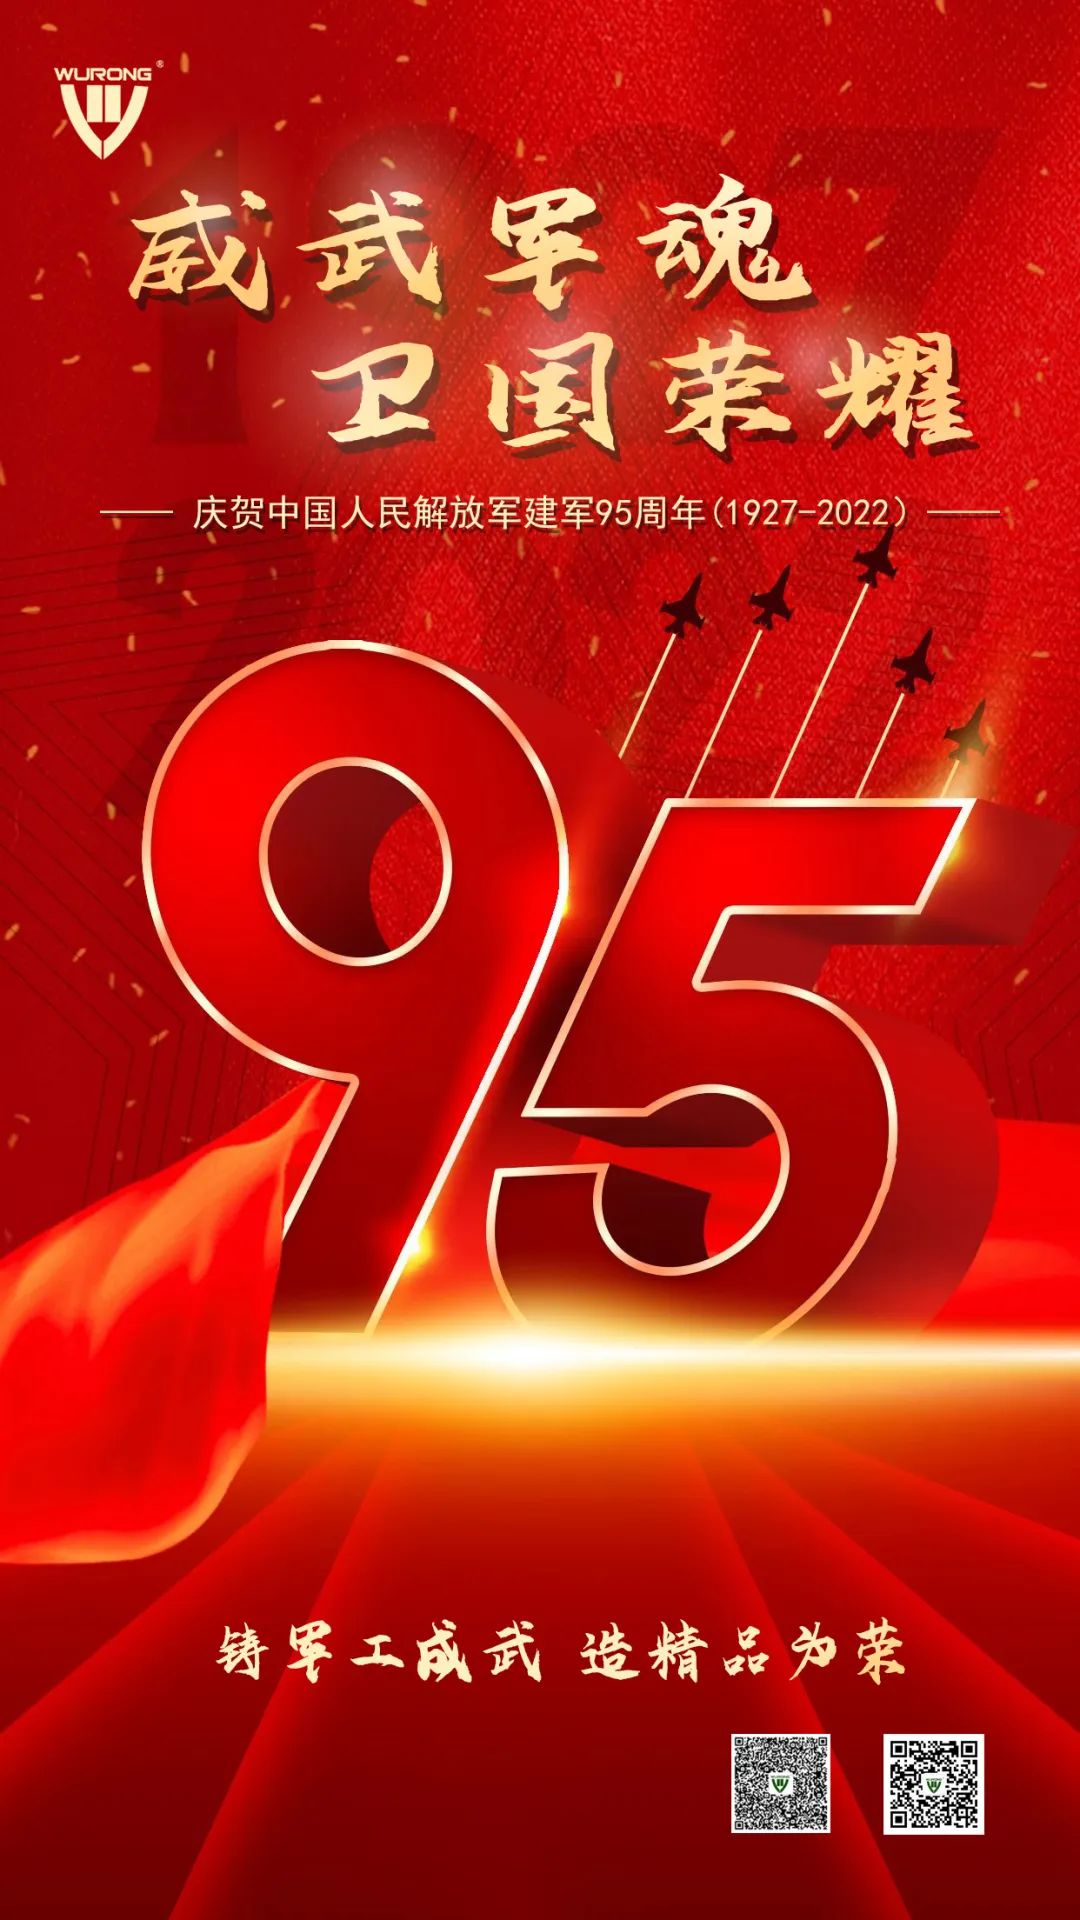 威武軍魂 衛國榮耀——熱烈慶祝中國人民解放軍建軍95周年！